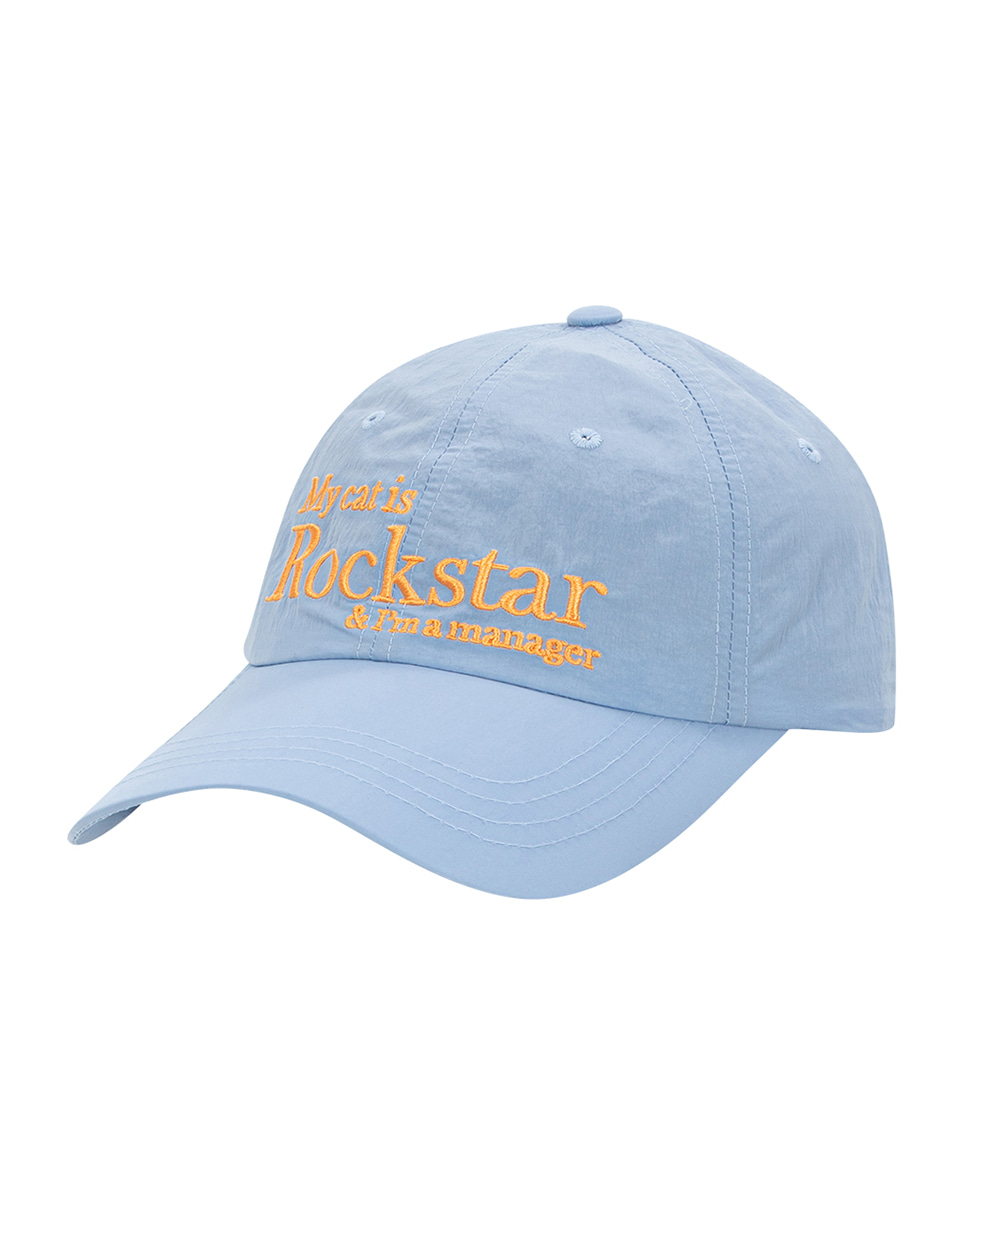 조거쉬 Rockstar cat cap (Sky blue) *RESTOCK*